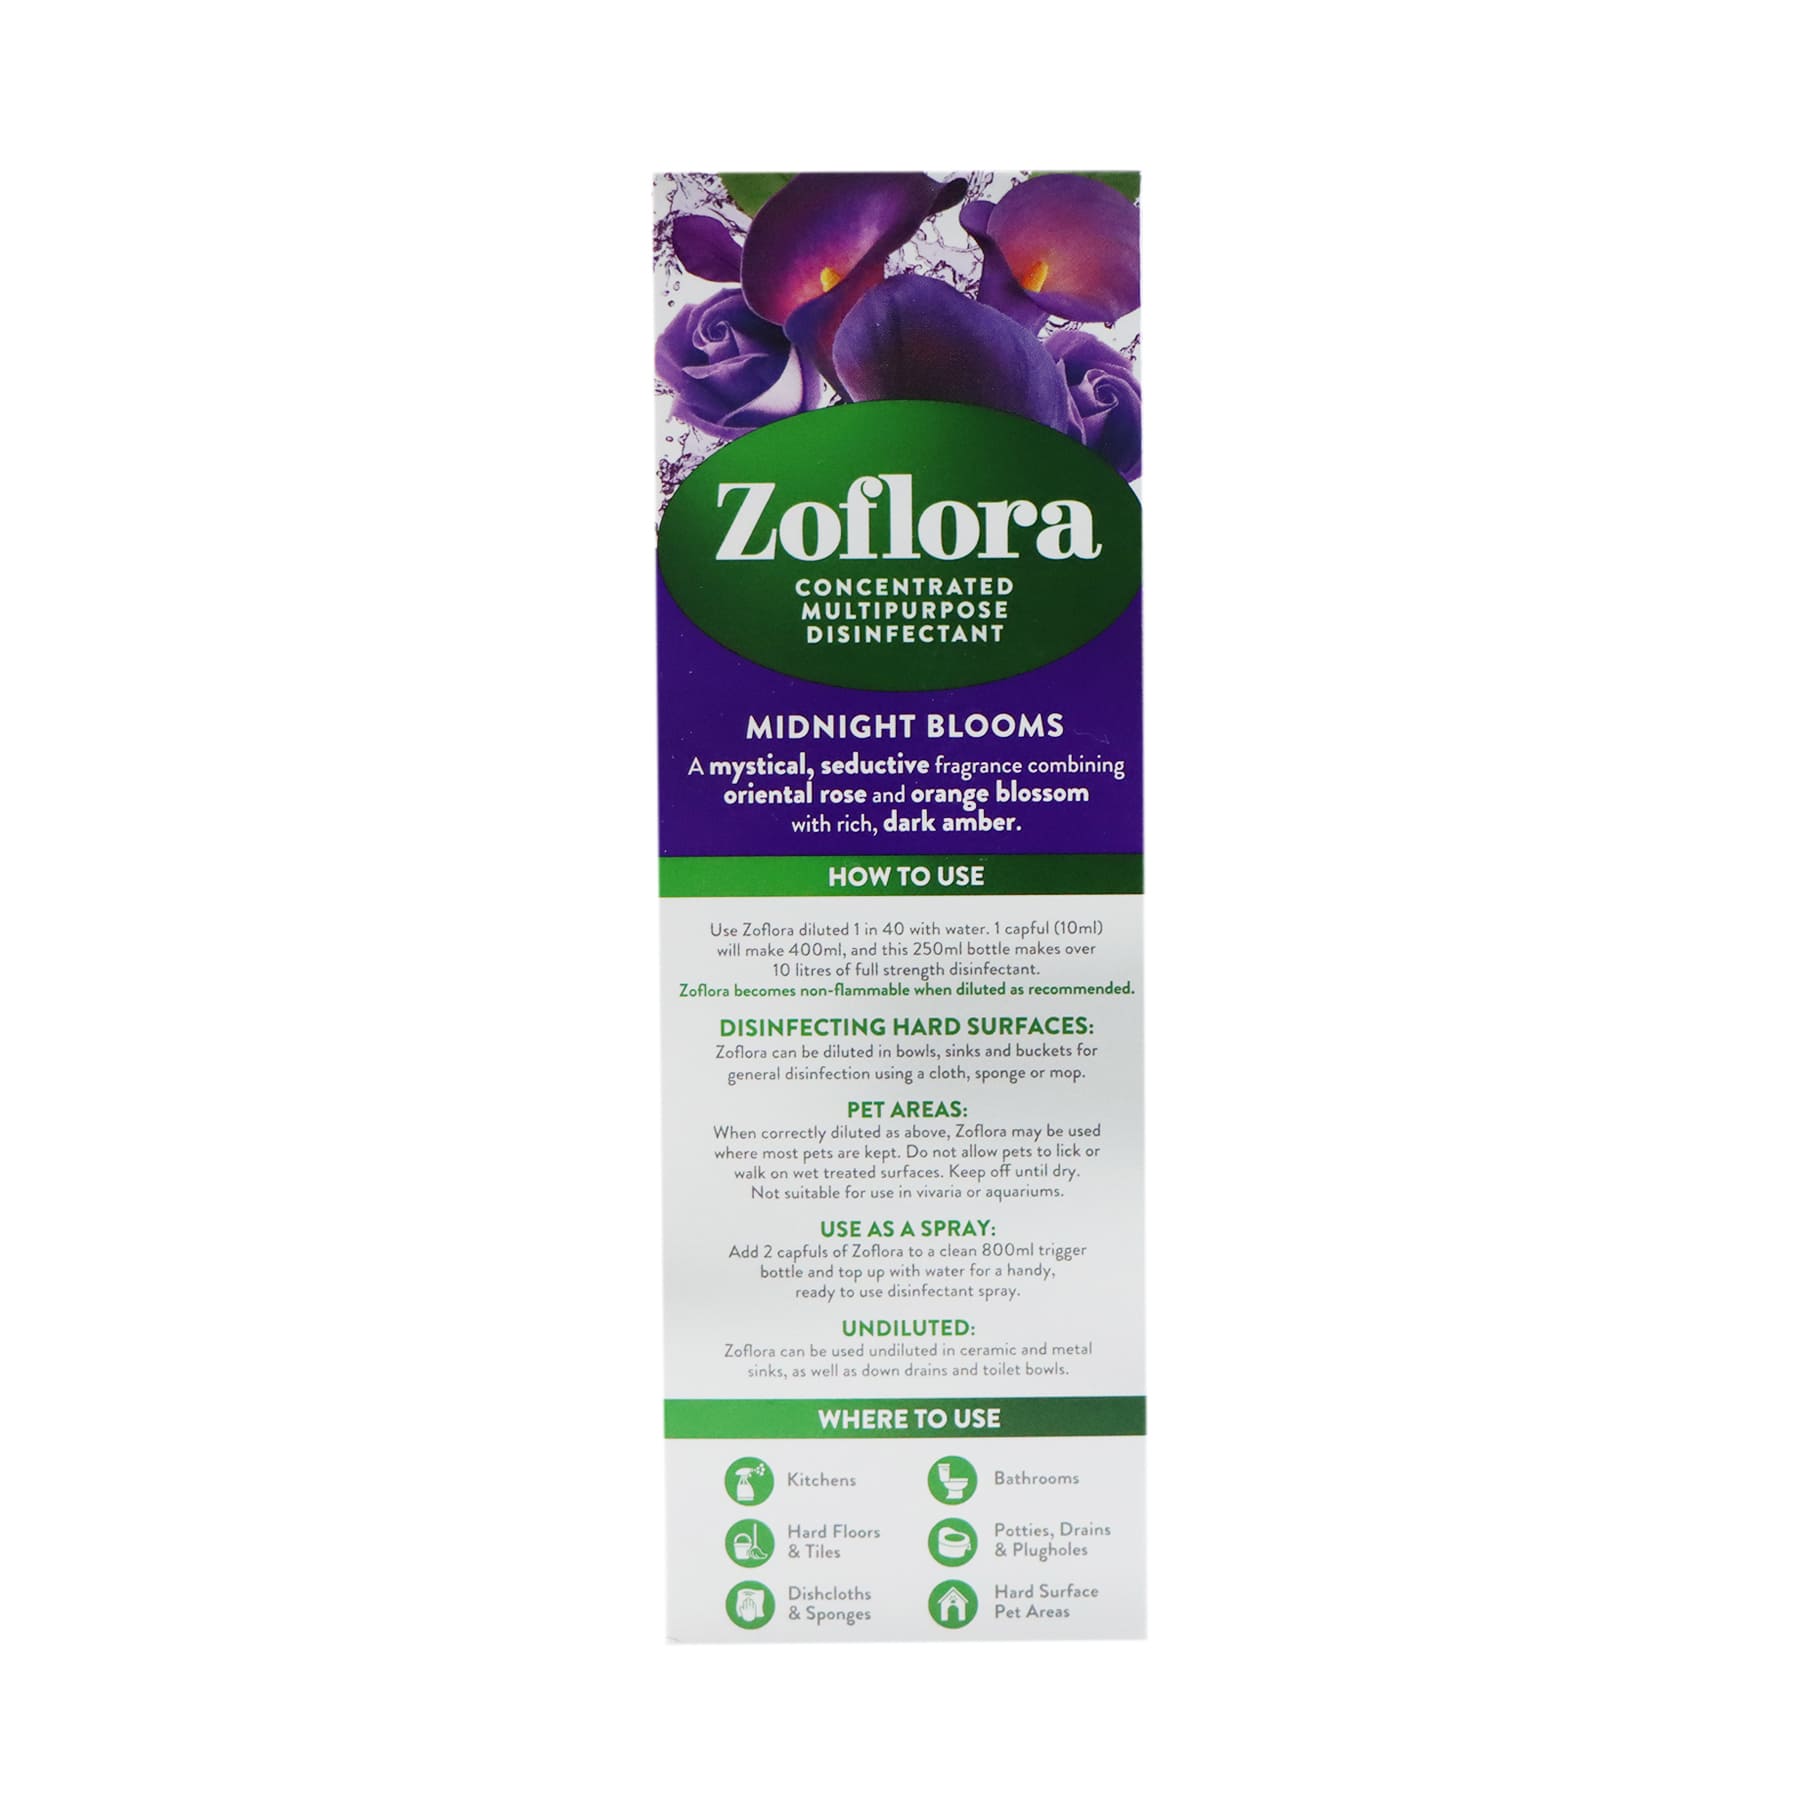 Zoflora 濃縮抗菌消毒劑 250ml (午夜绽放)